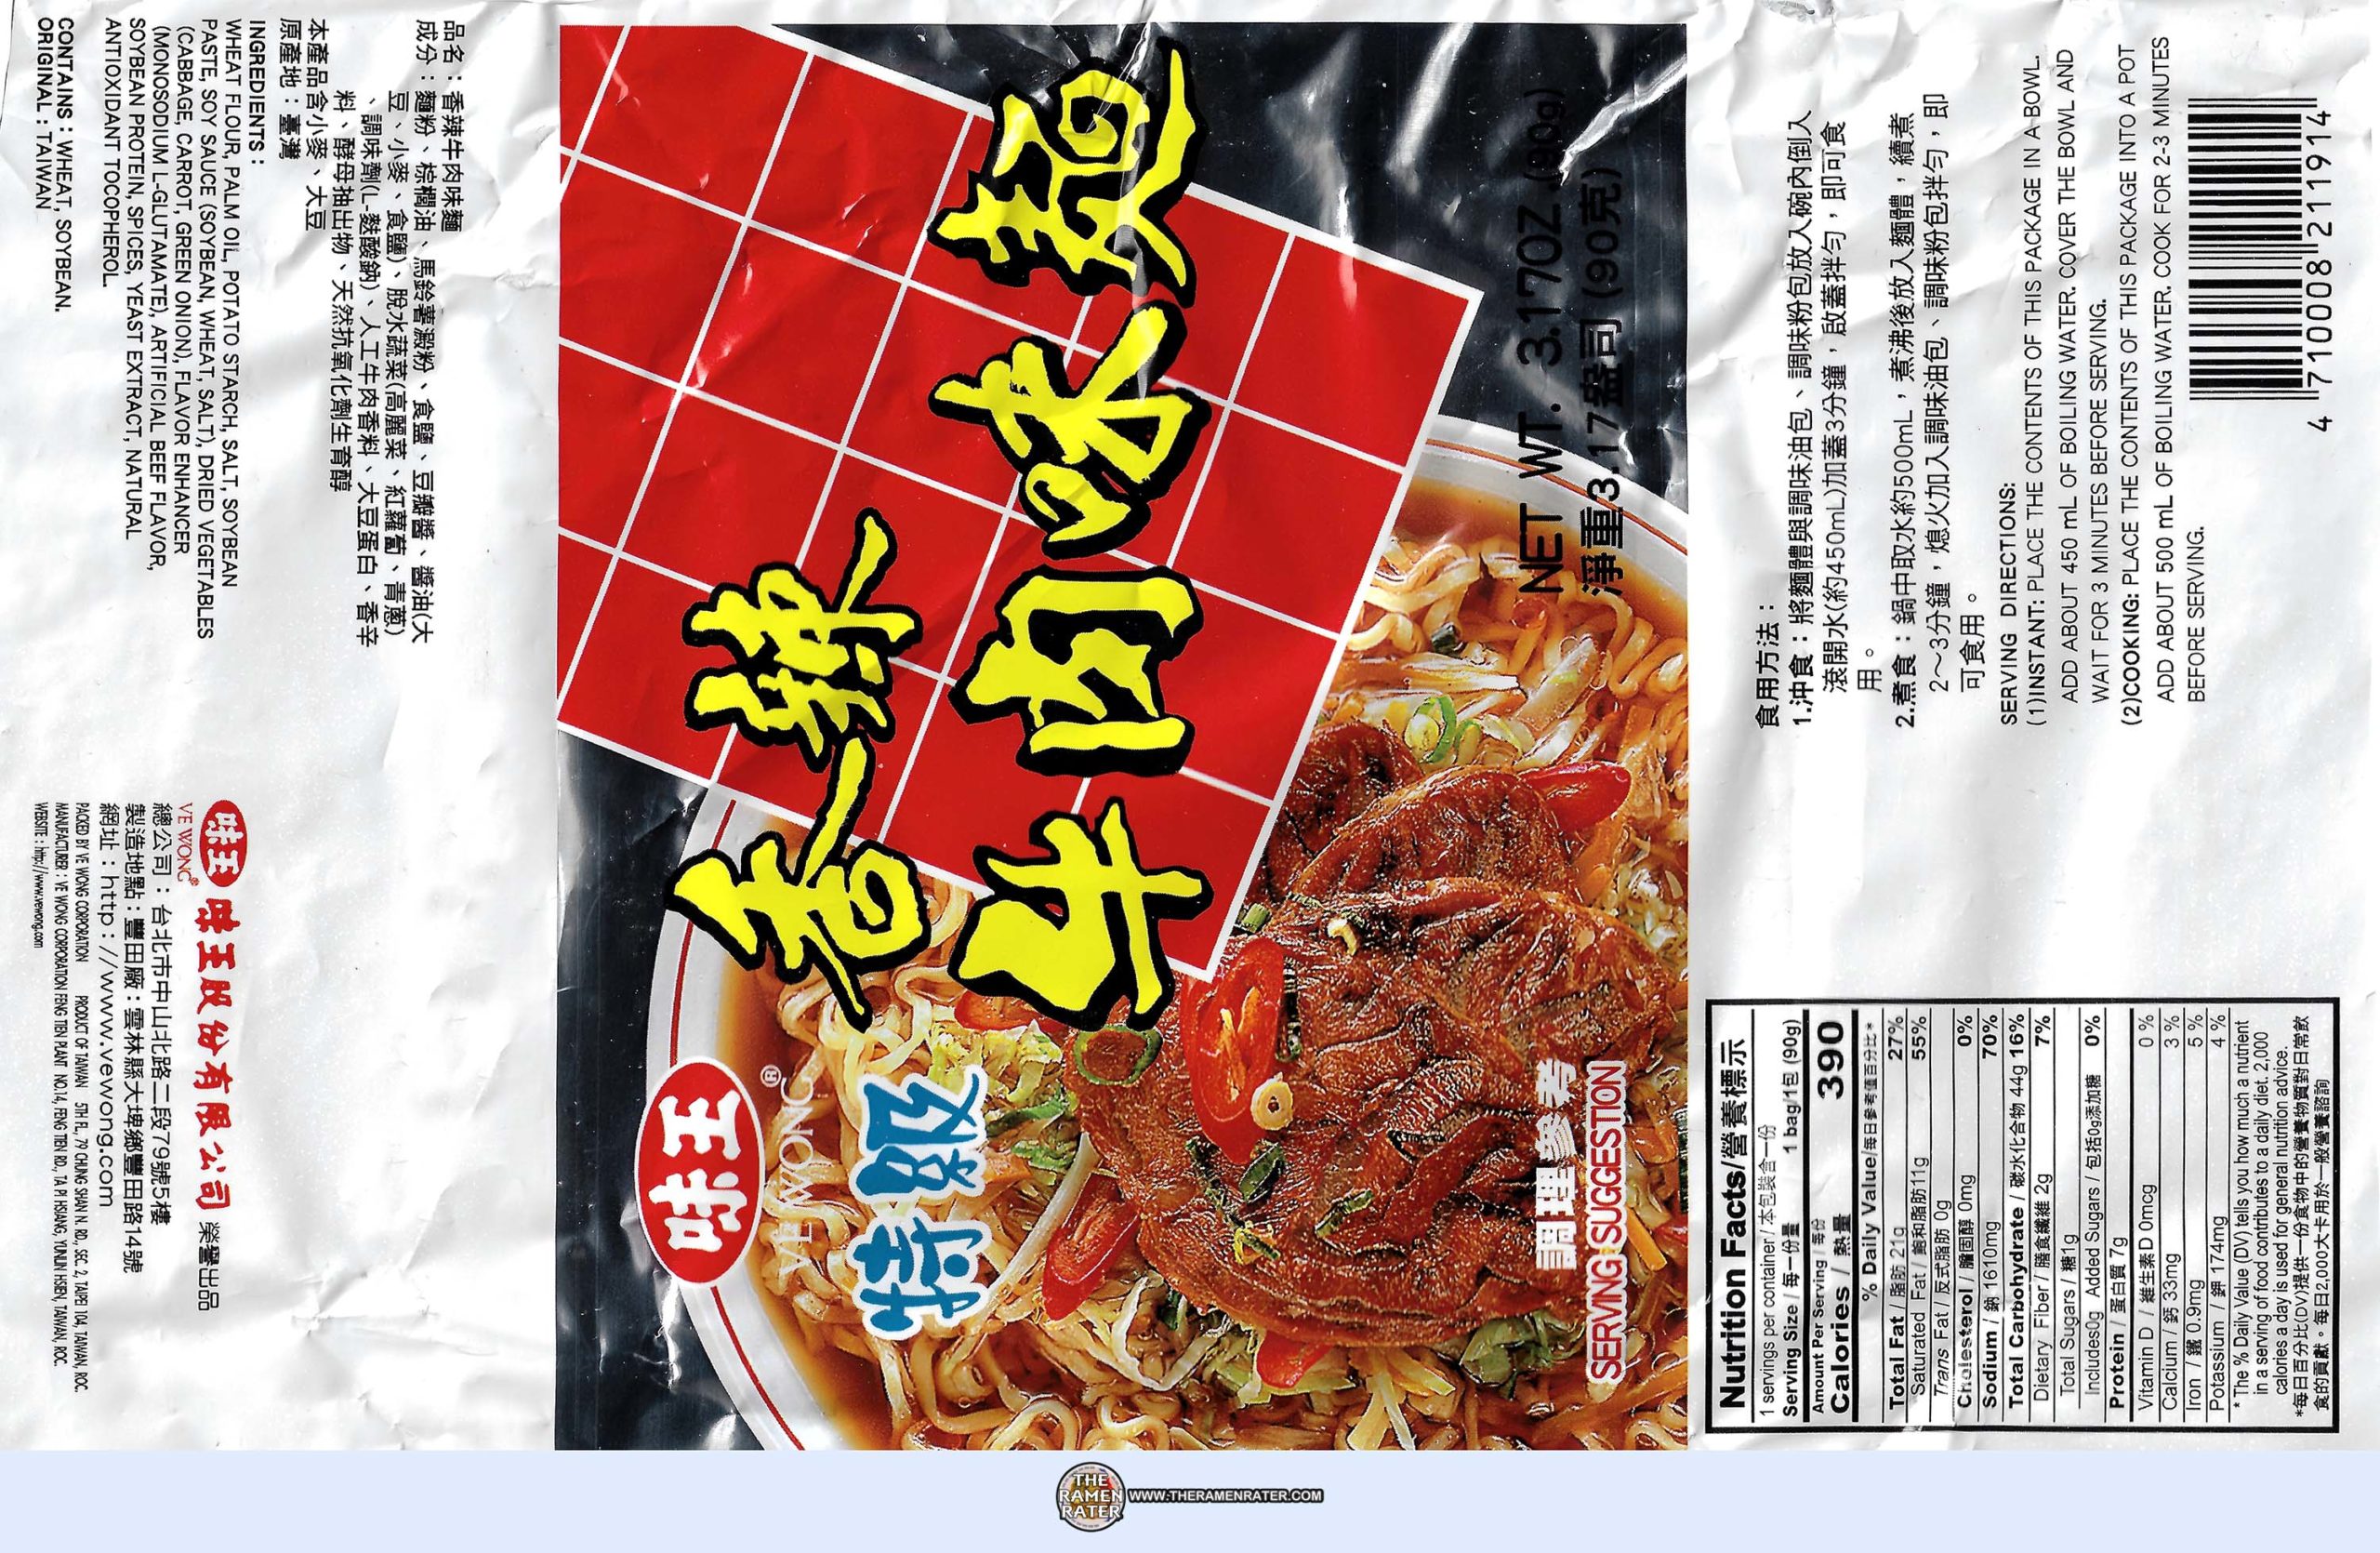 ASSI Rice Noodle Soup Bowl - Beef Flavor 3.17oz (90g) - Just Asian